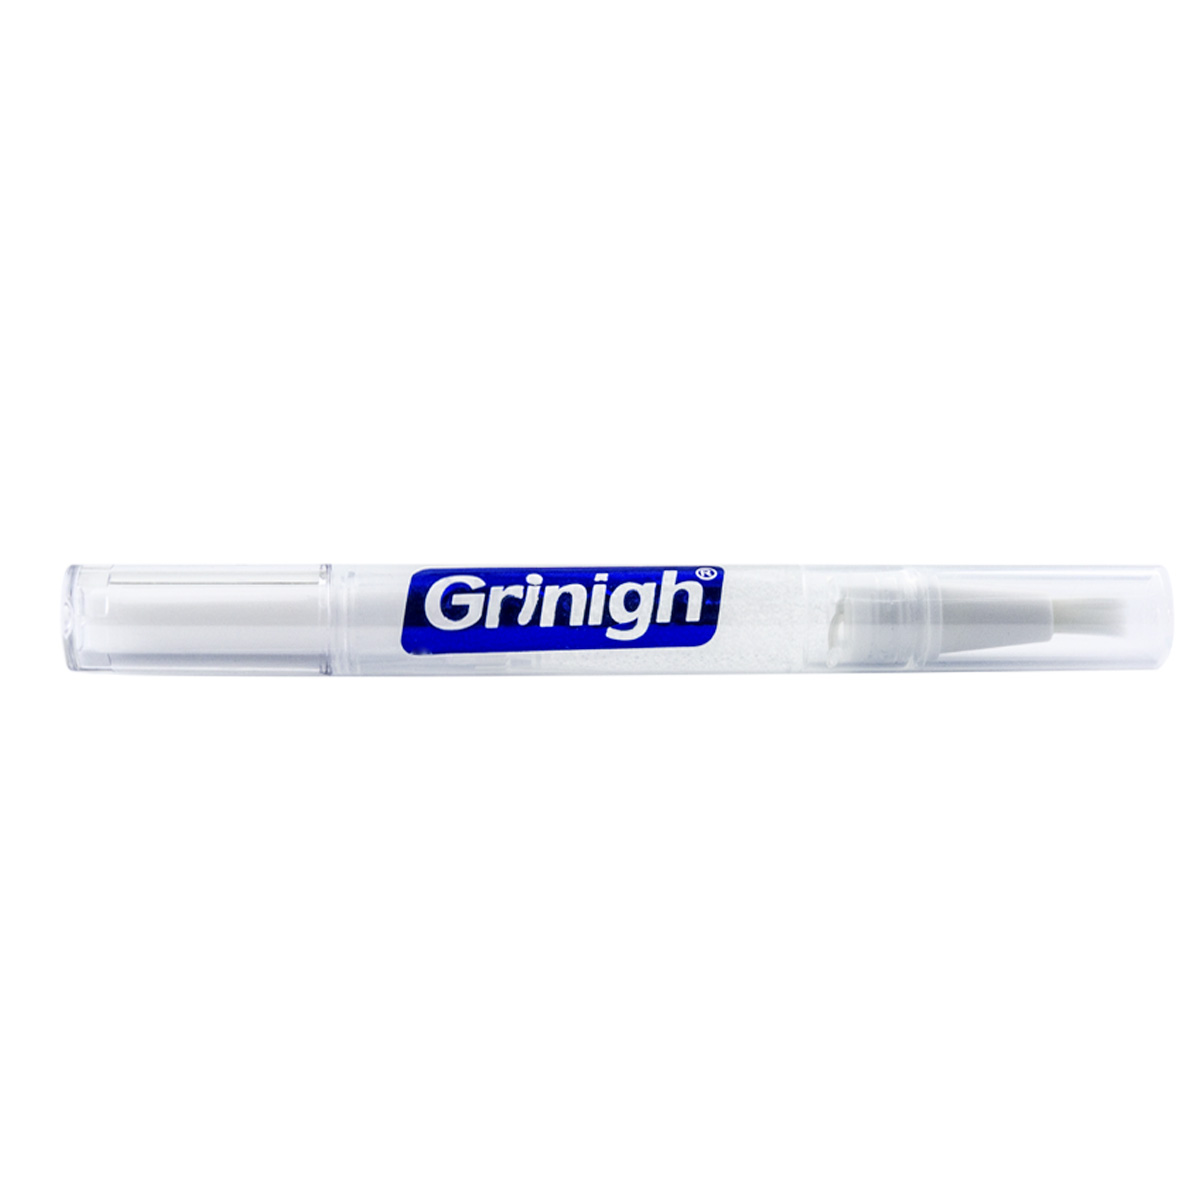 Grin365 Точные белые зубы Отбеливание Аппликатор Pen с натуральными ингредиентами - 3 подсчитывать - Концентрированный гель прочность (6% Пероксид водорода)